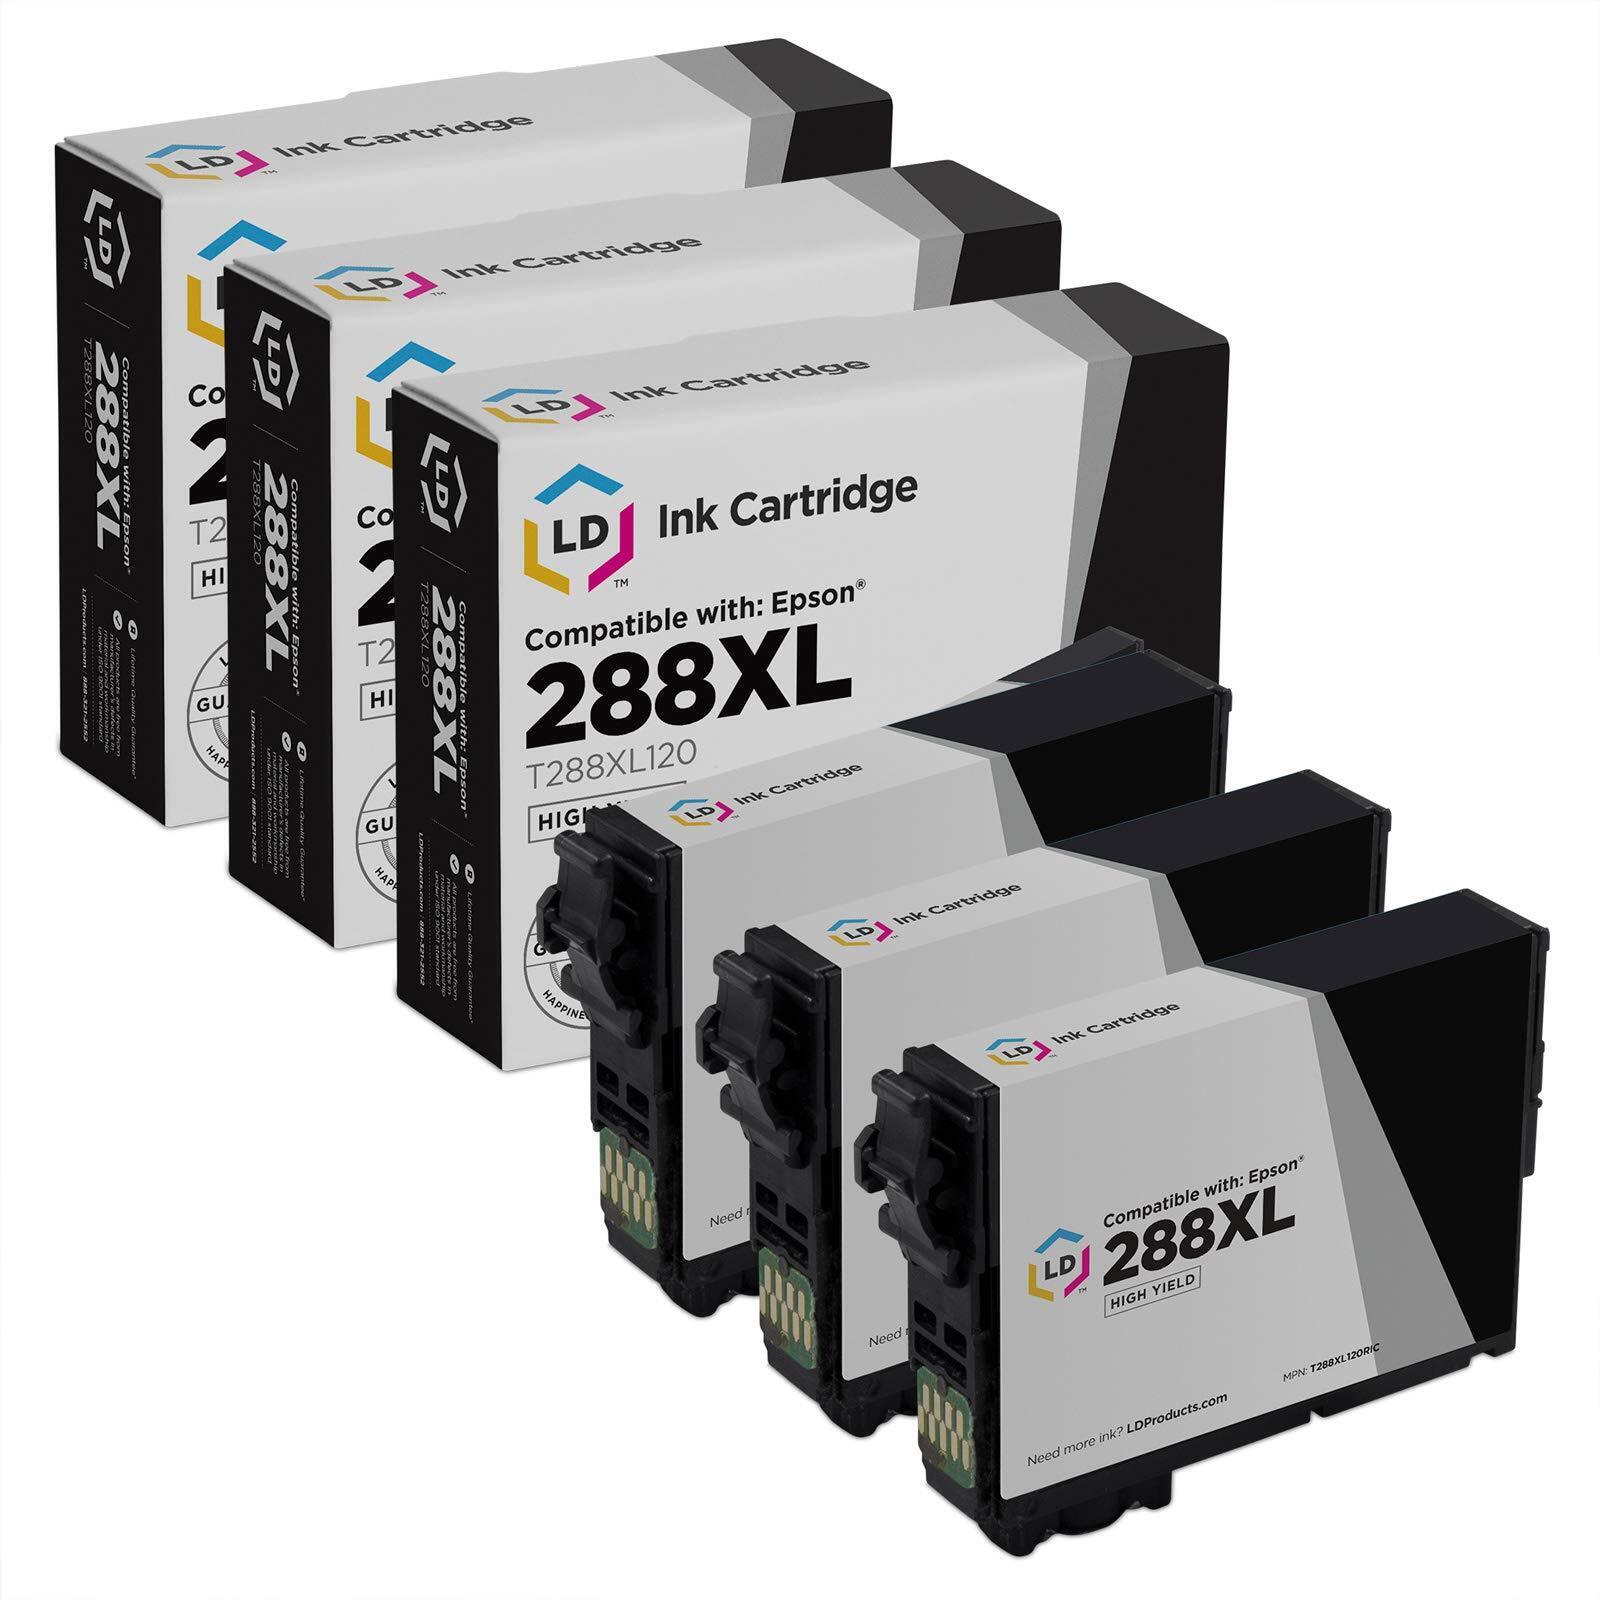 LD 3PK Black Printer Ink Cartridge for Epson T288XL120 288XL 288 XP-340 XP-434